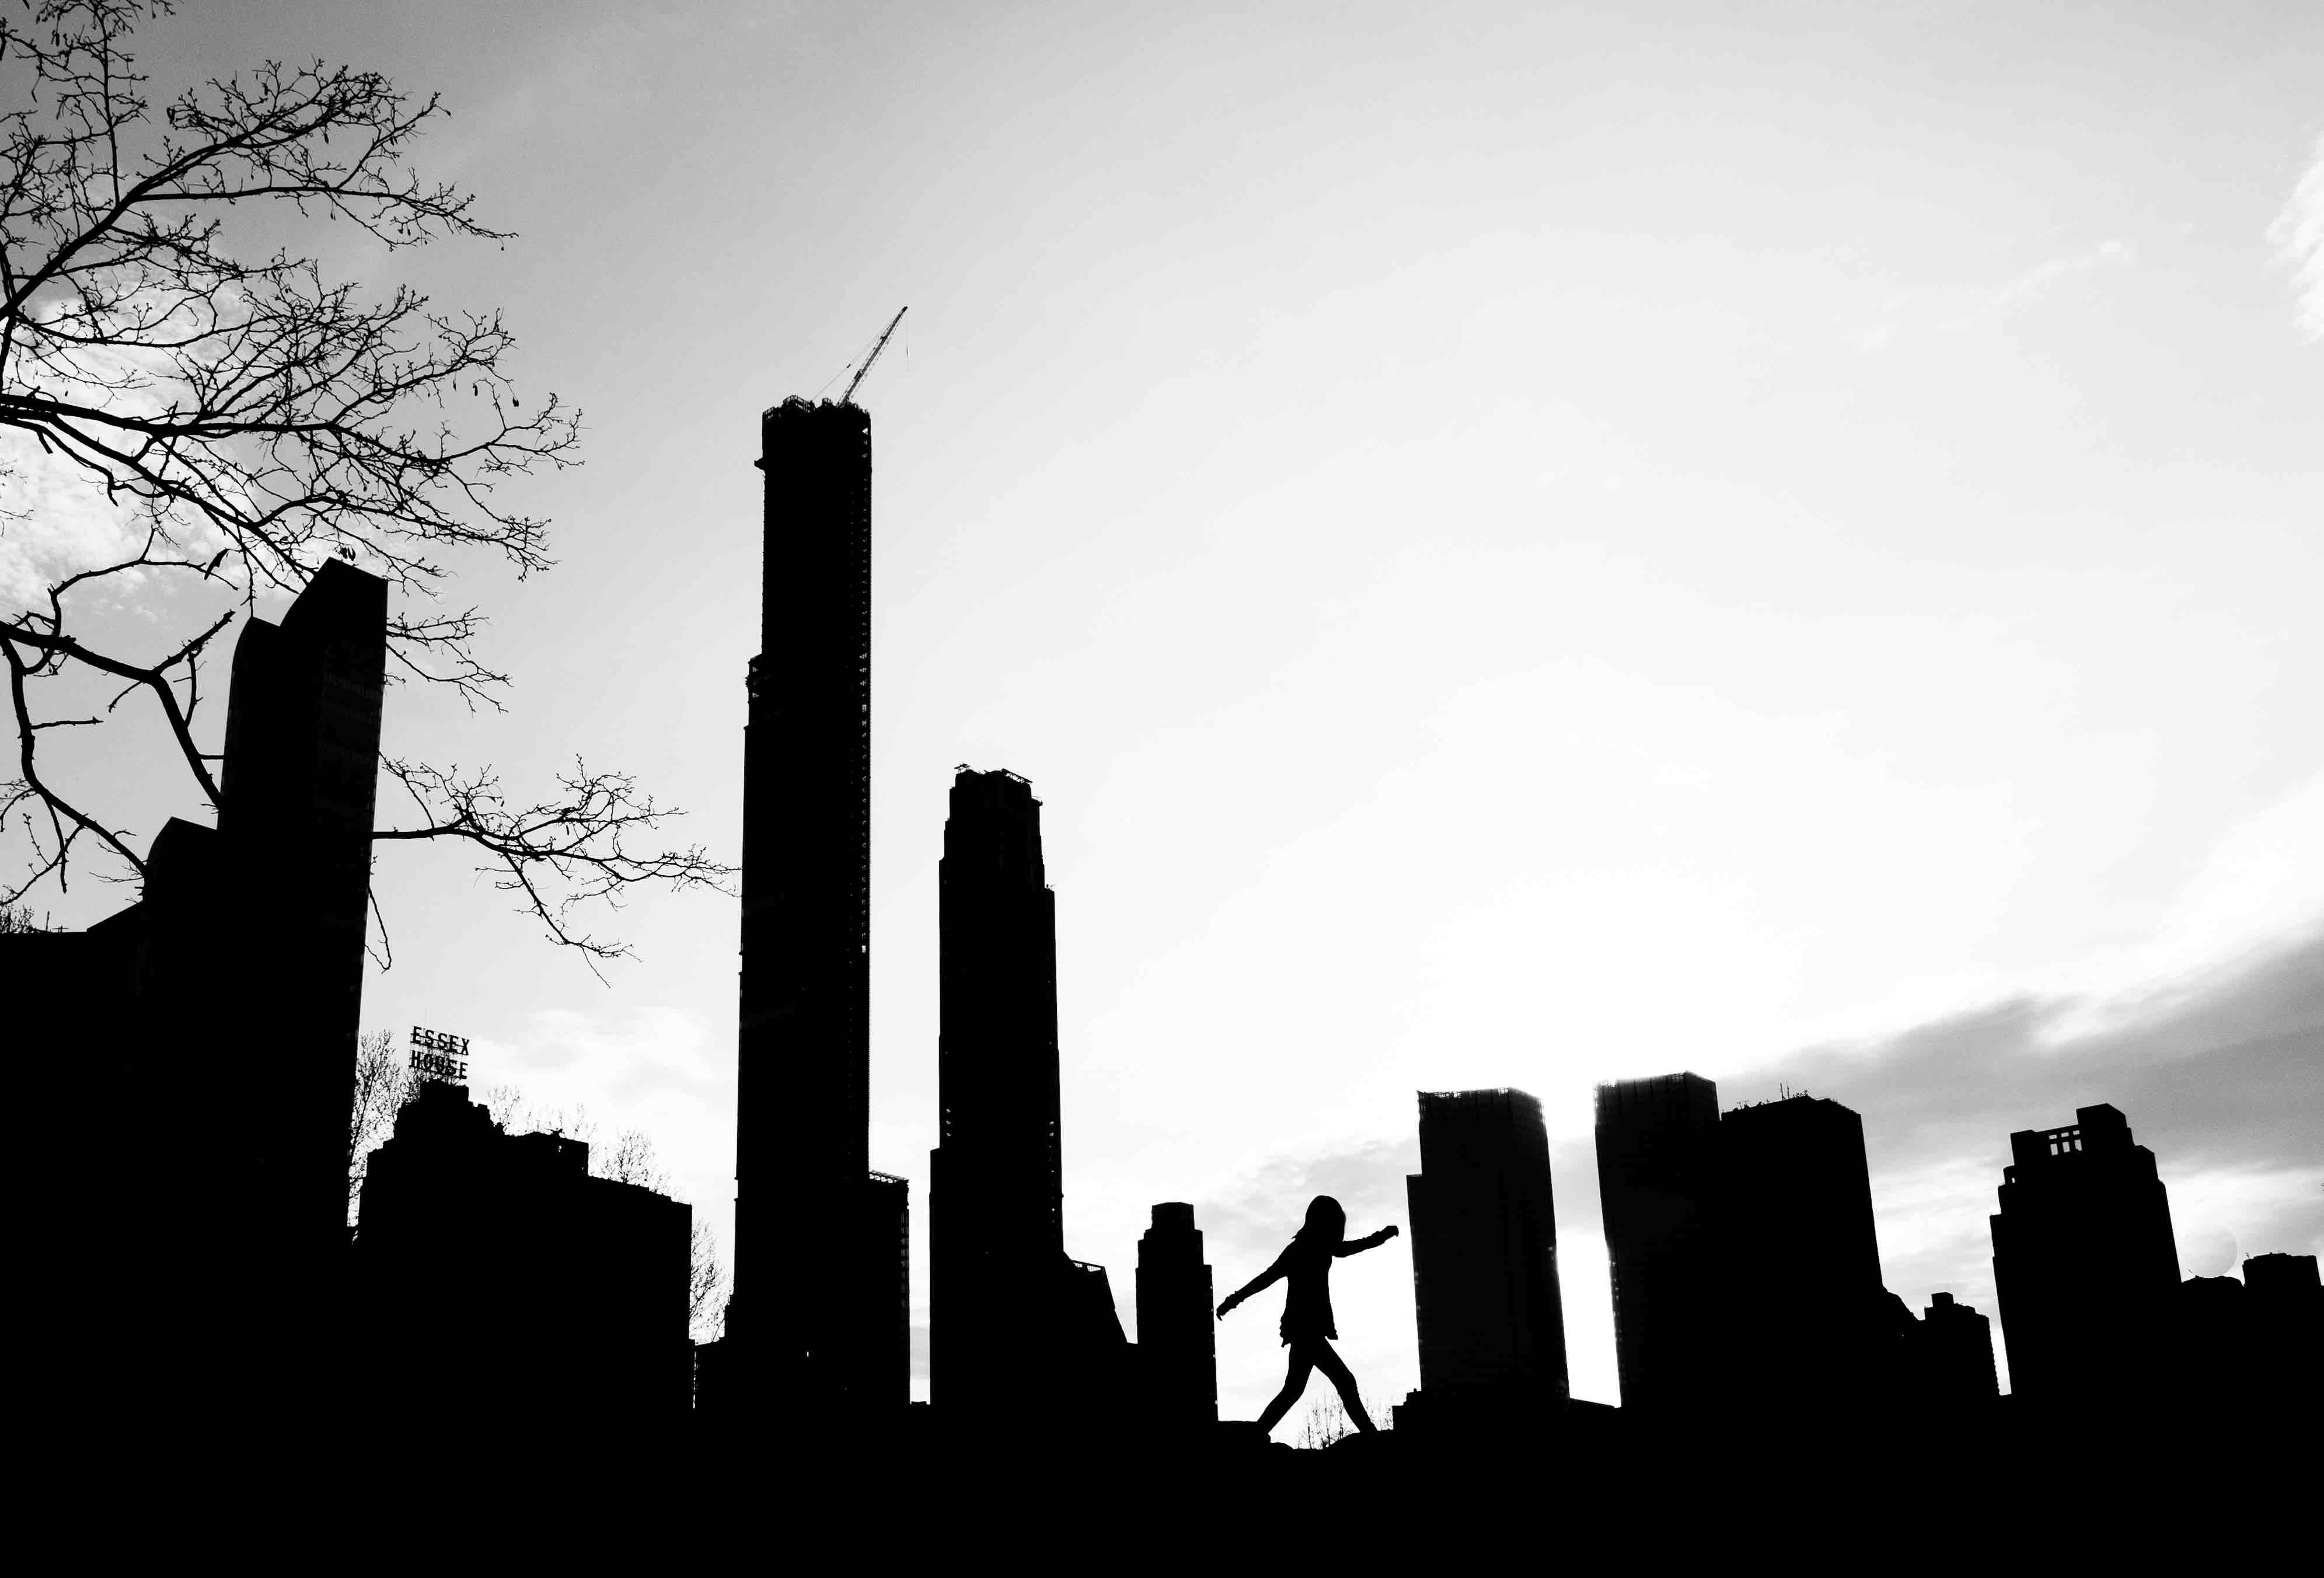 City shadows by photographer Giorgio Galimberti